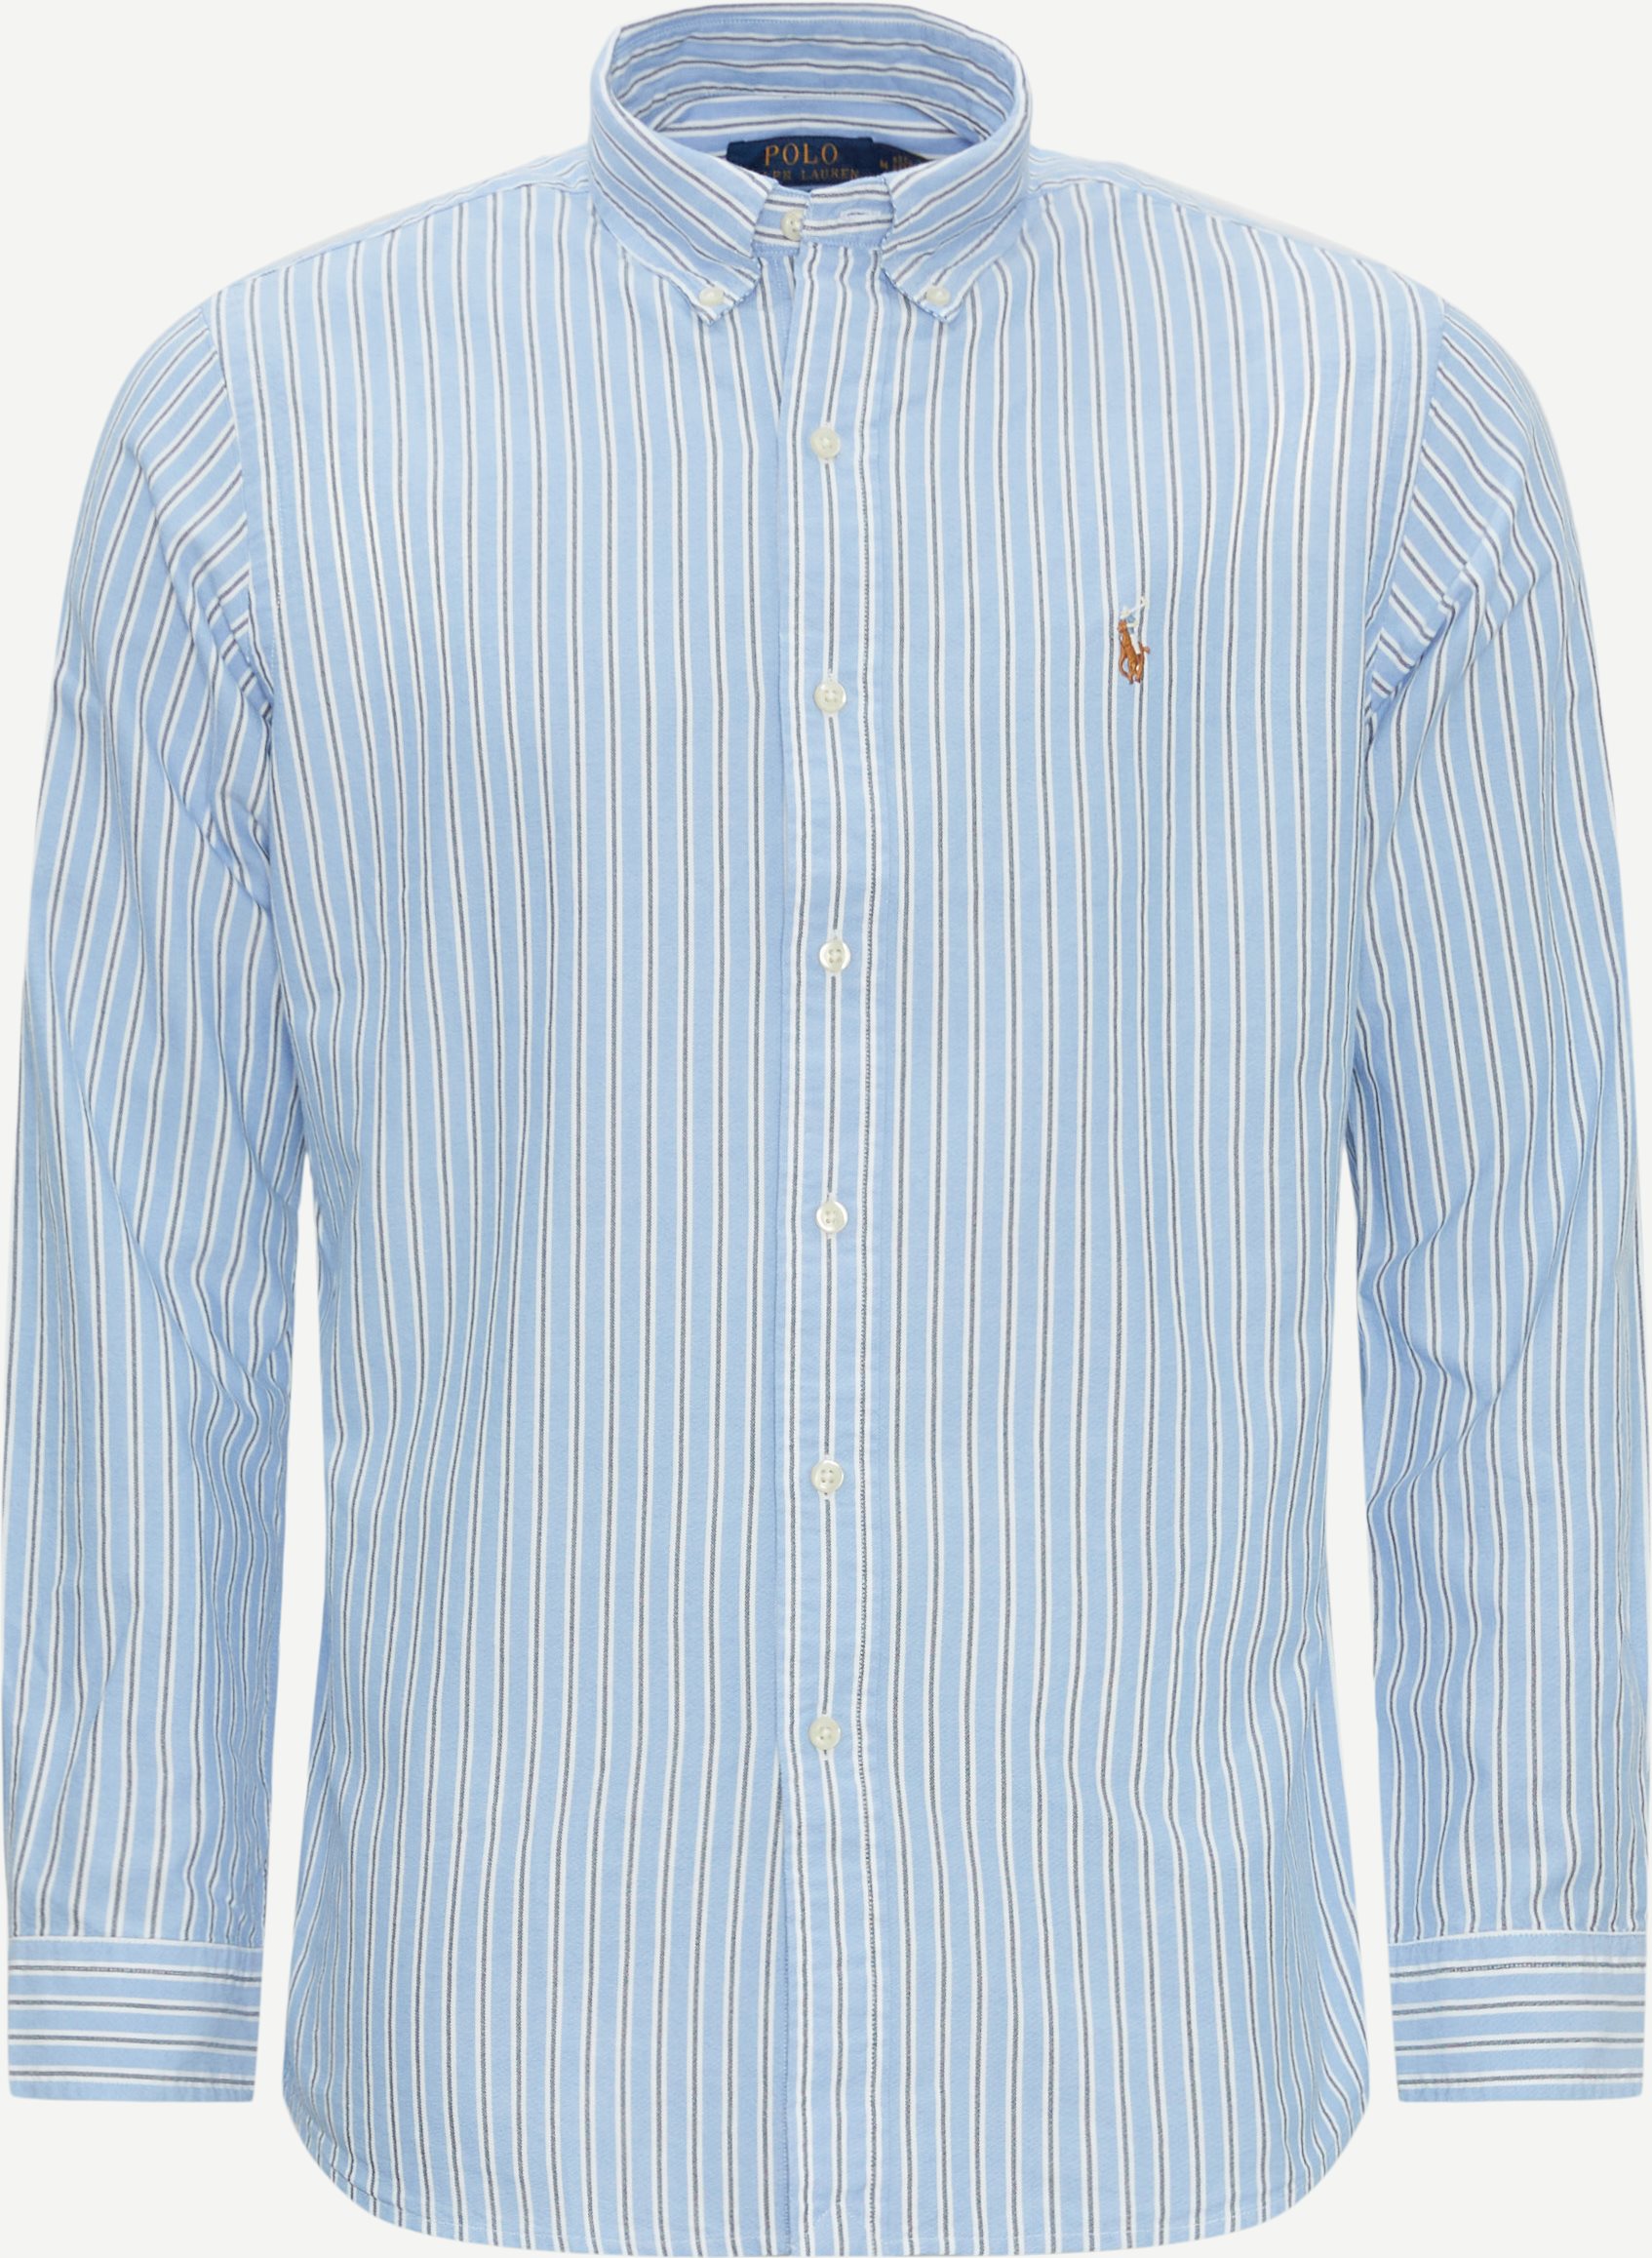 Polo Ralph Lauren Shirts 710928918 Blue